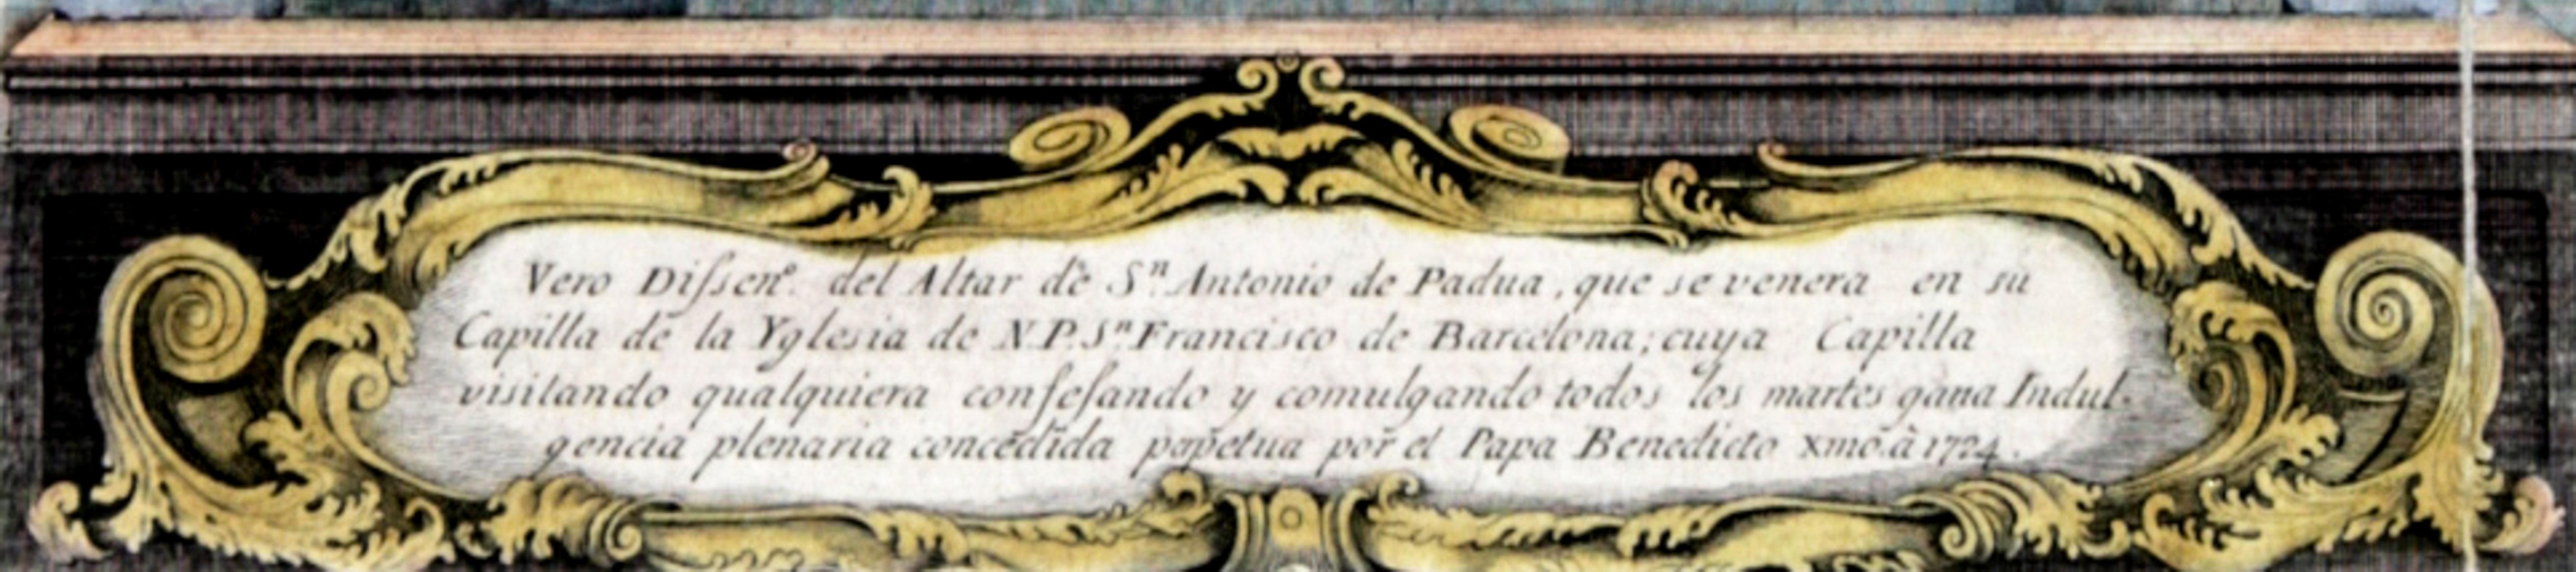 Handkolorierte Gravur des Altars von St. Antonio de Padua 1724 – Print von Unknown